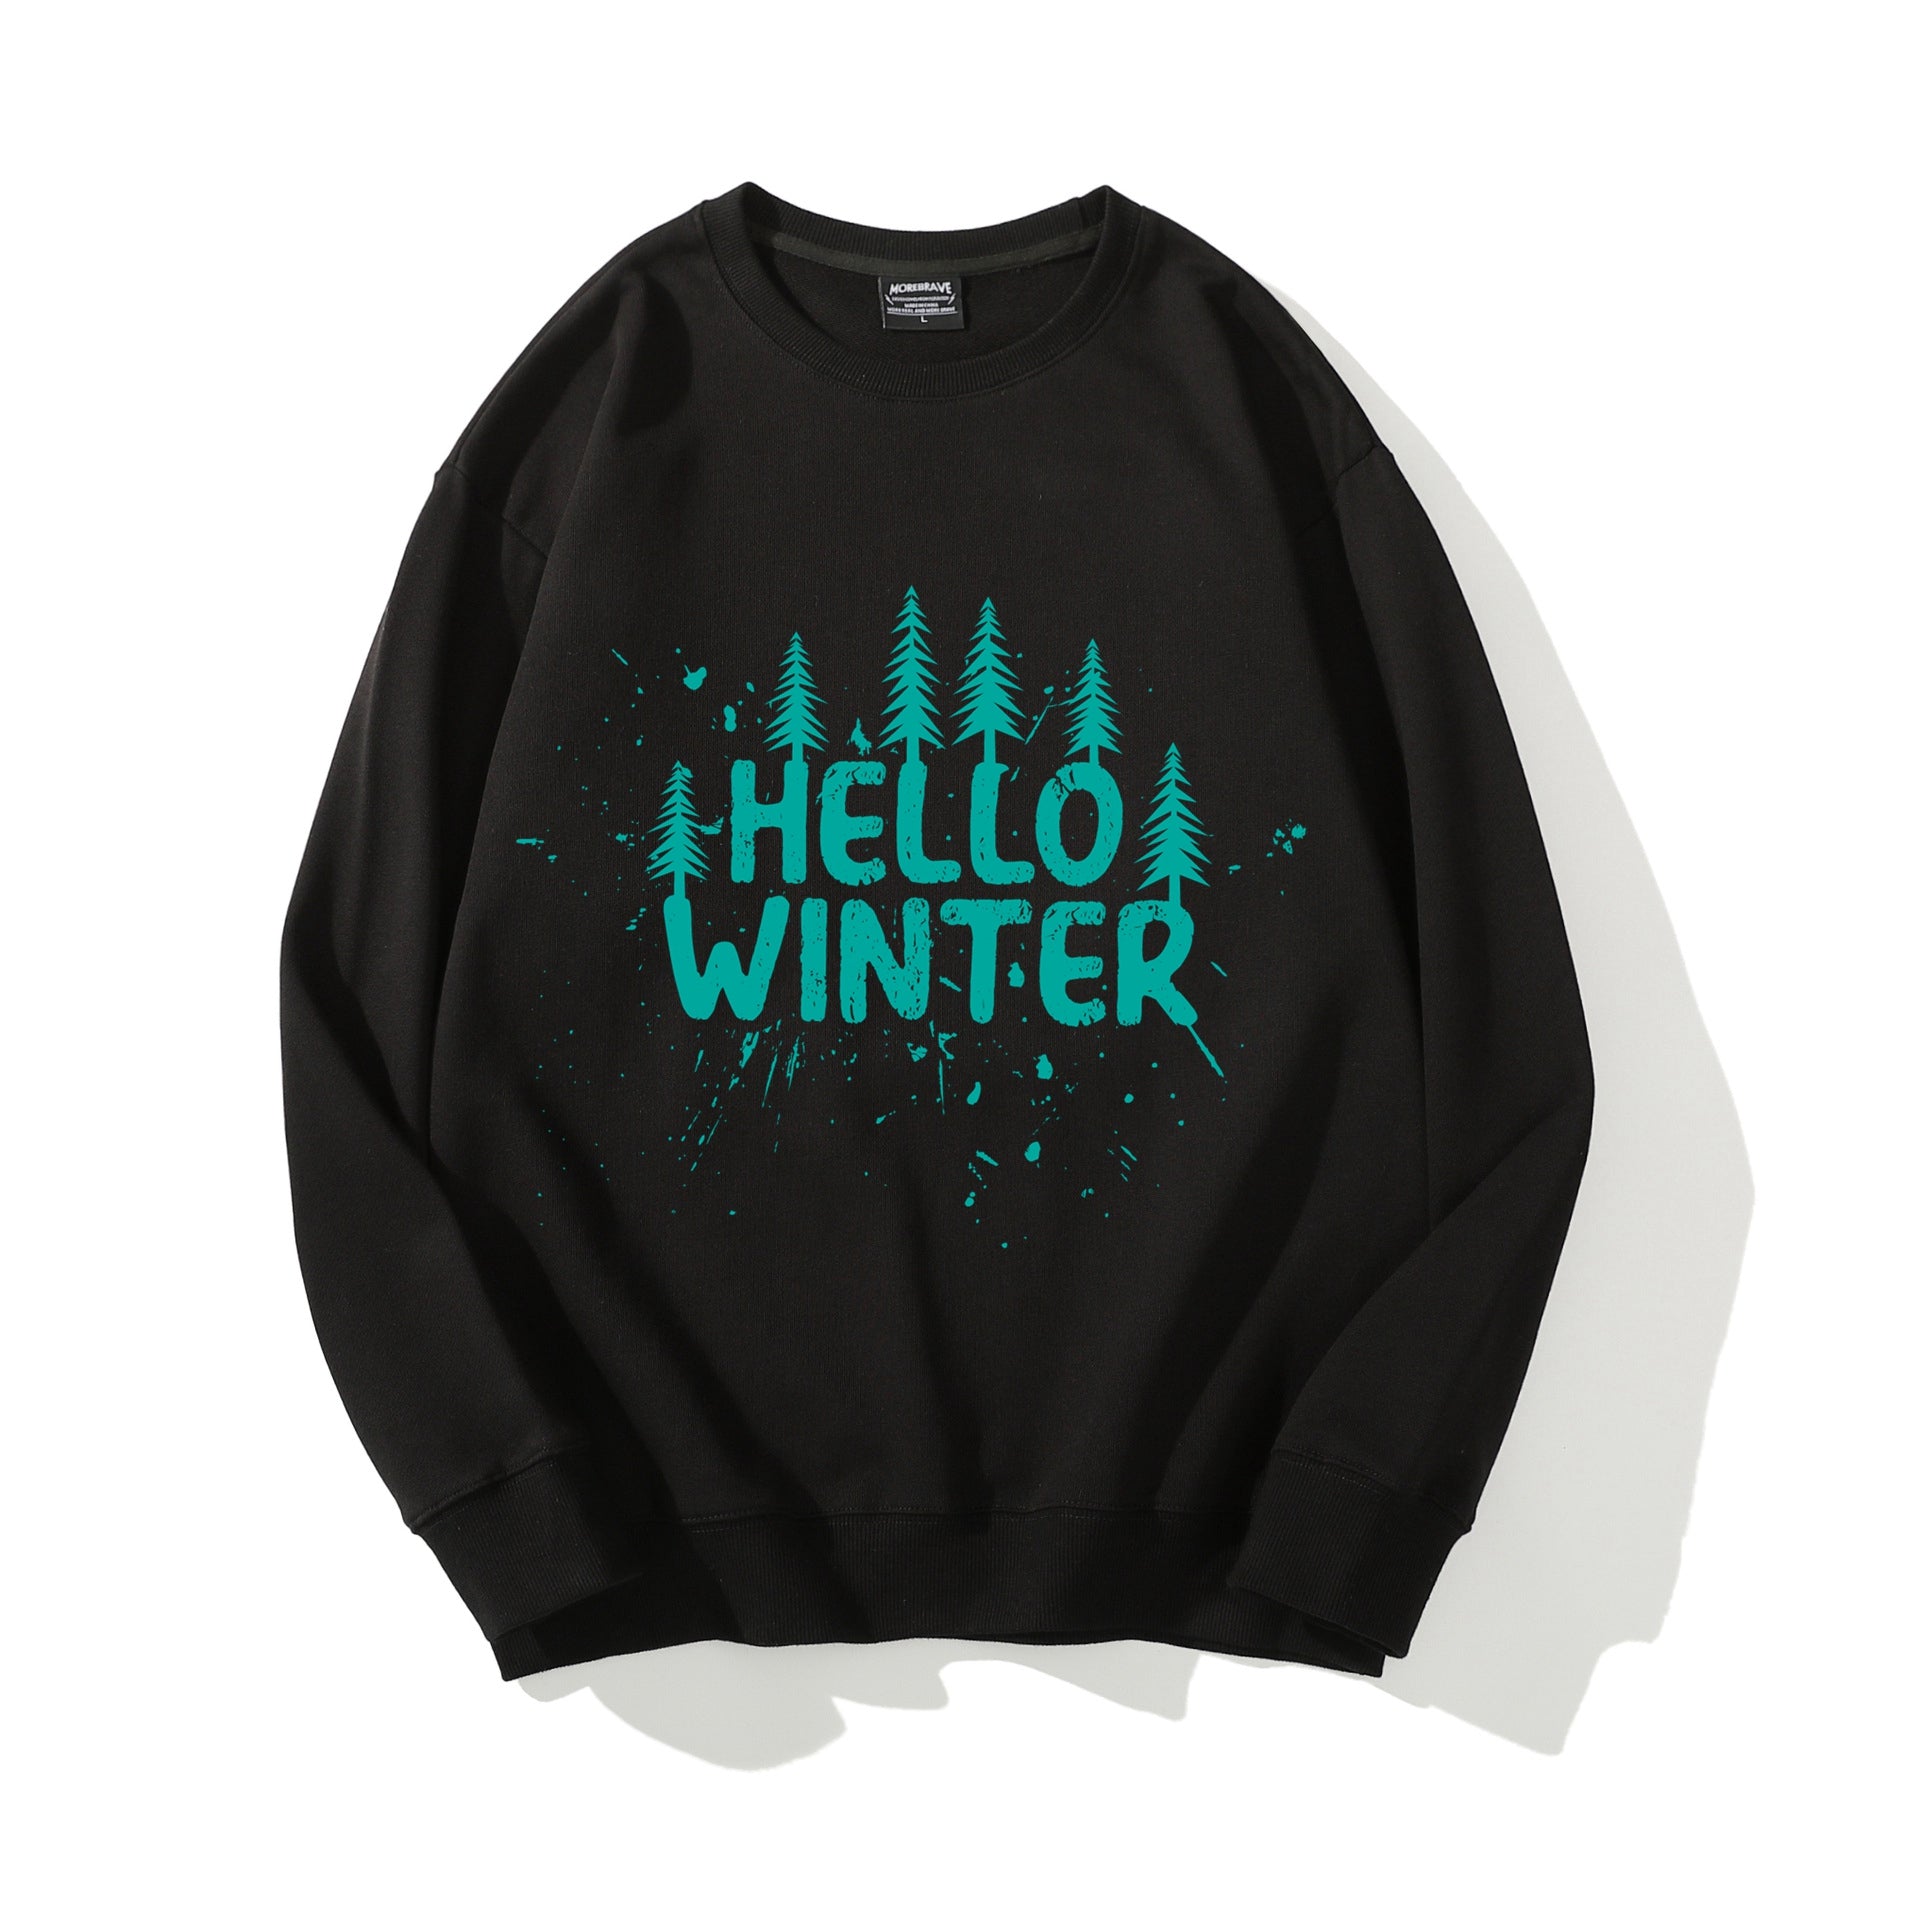 Hello Winter Crewneck Sweatshirt Men Winter Graphic Sweater Trendy Tops